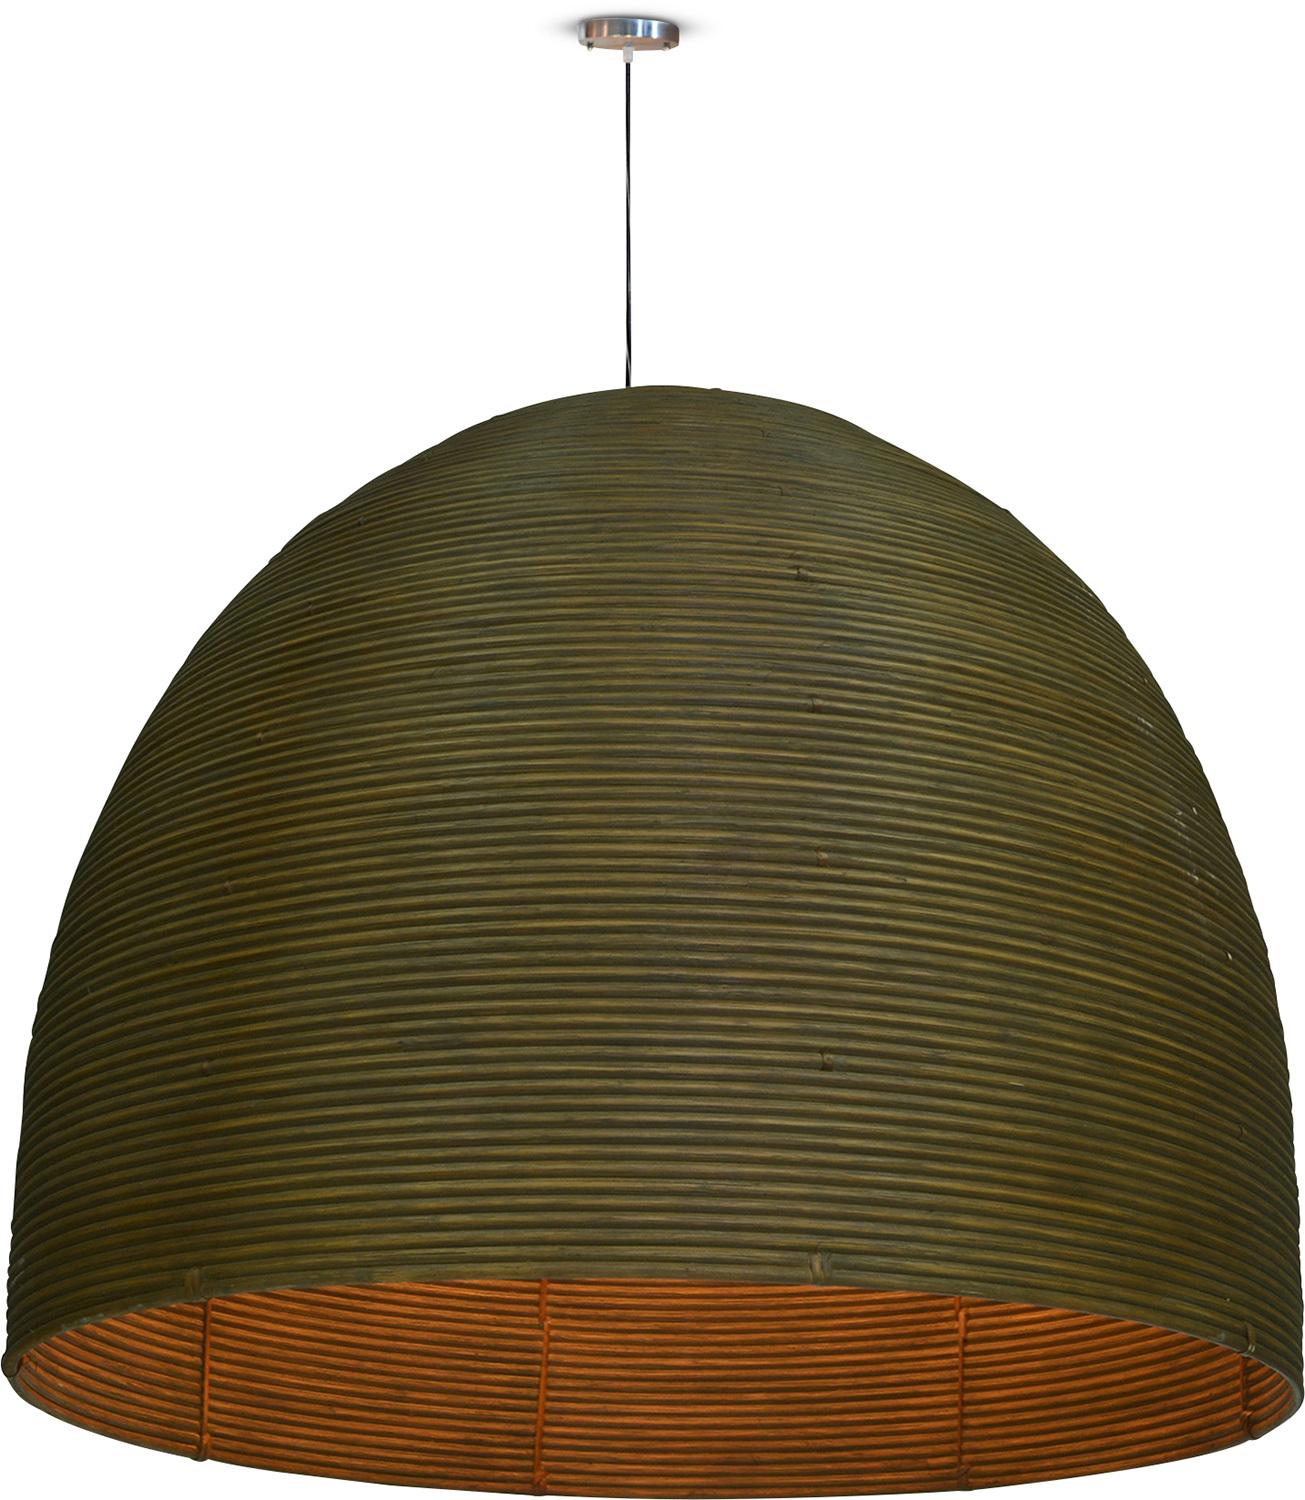 Lampa wisząca Cap, Ø 90 cm, wysokość 78 cm, kubu-rattan bejcowany na brązowo 